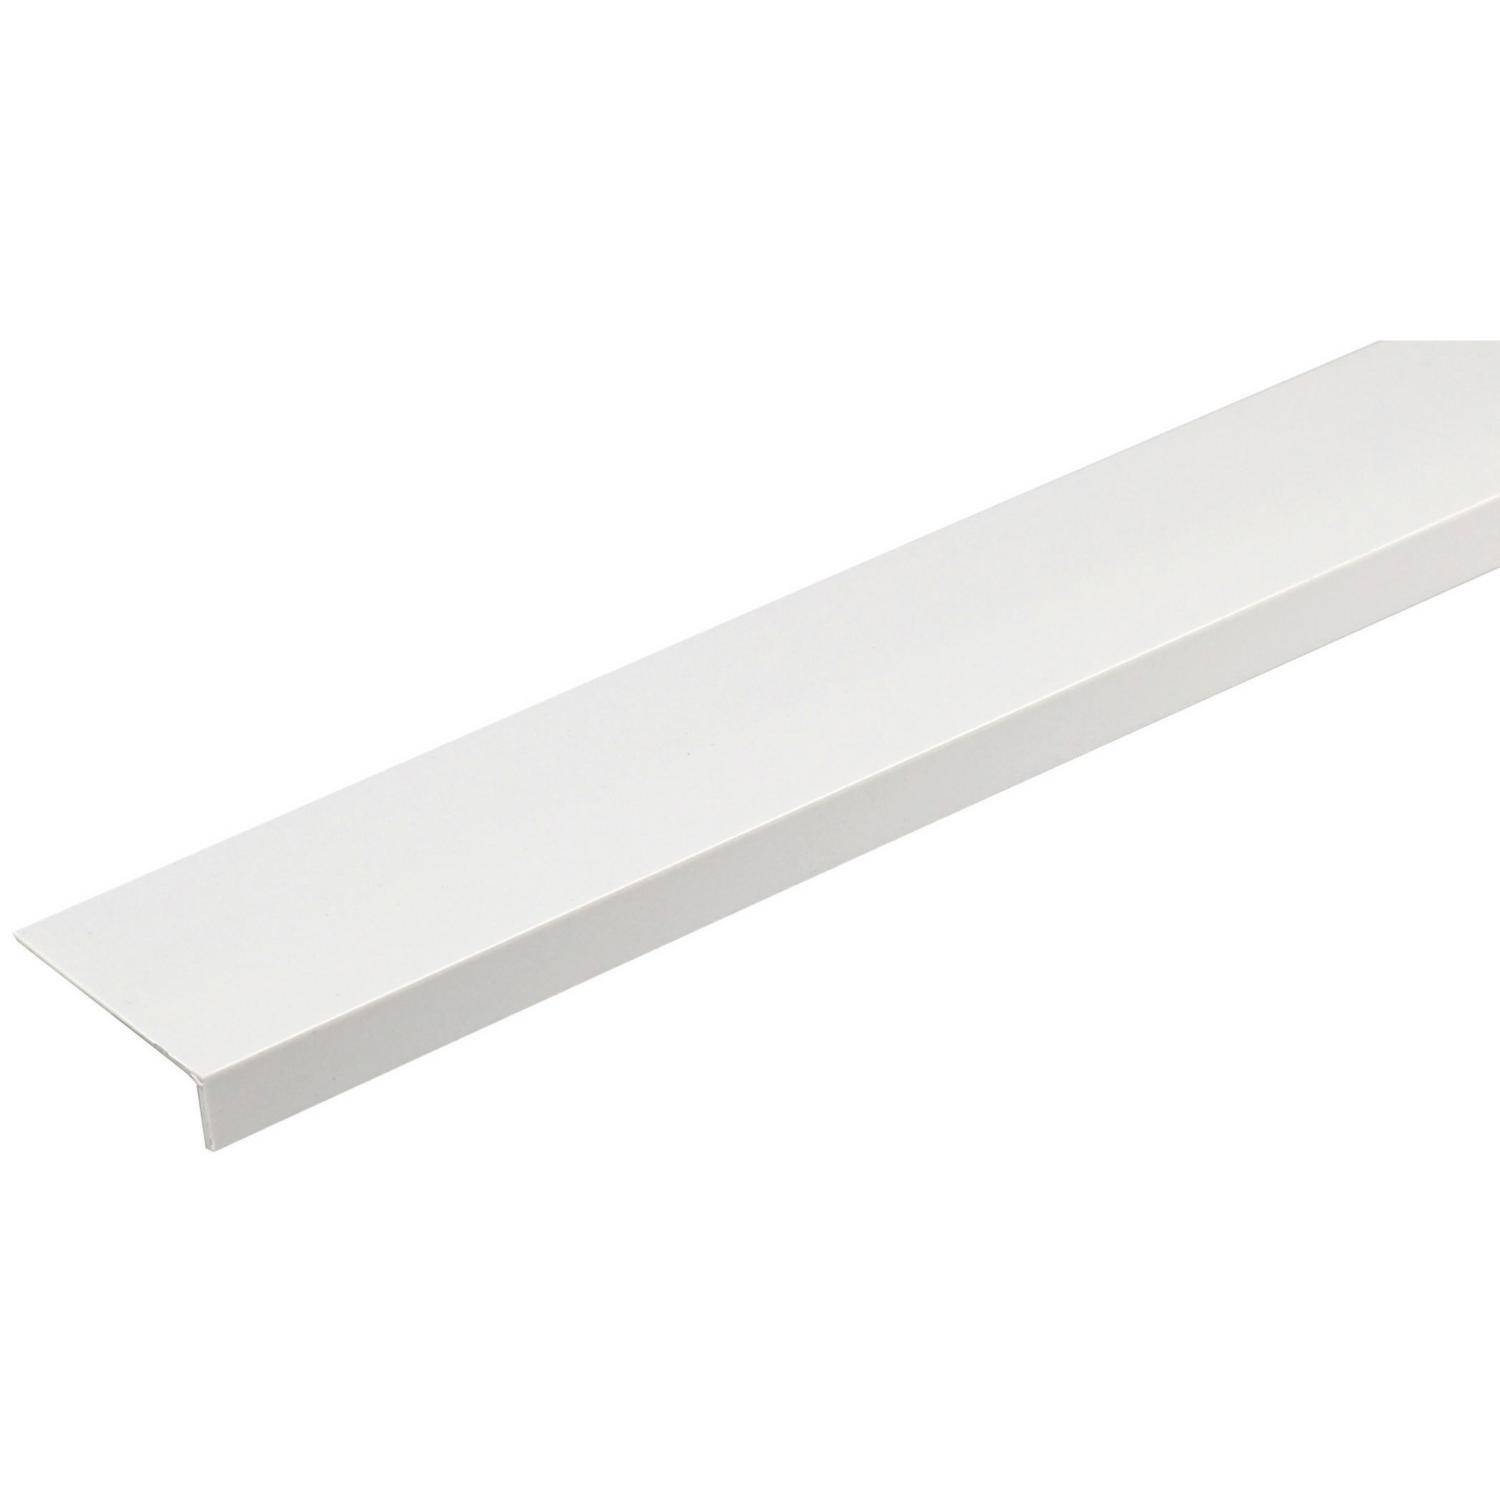 Angulo PVC 20X20mm x 3mts. color blanco - Empresas CNP